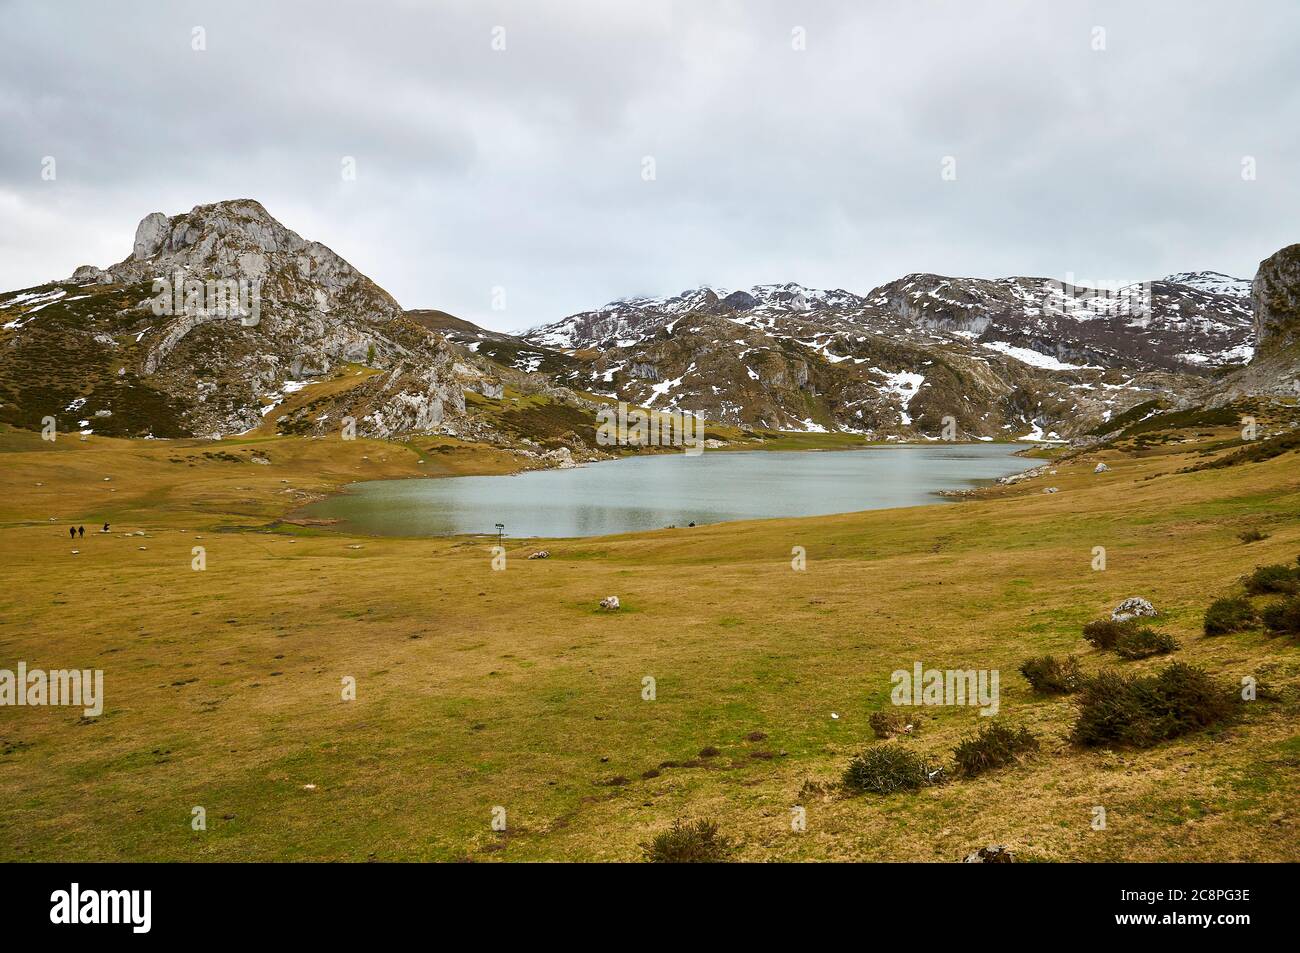 Randonneurs autour du lac glaciaire Lago Ercina par une journée nuageux avec de la neige dans les pics environnants (Cangas de Onís, Parc national Picos de Europa, Asturies, Espagne) Banque D'Images